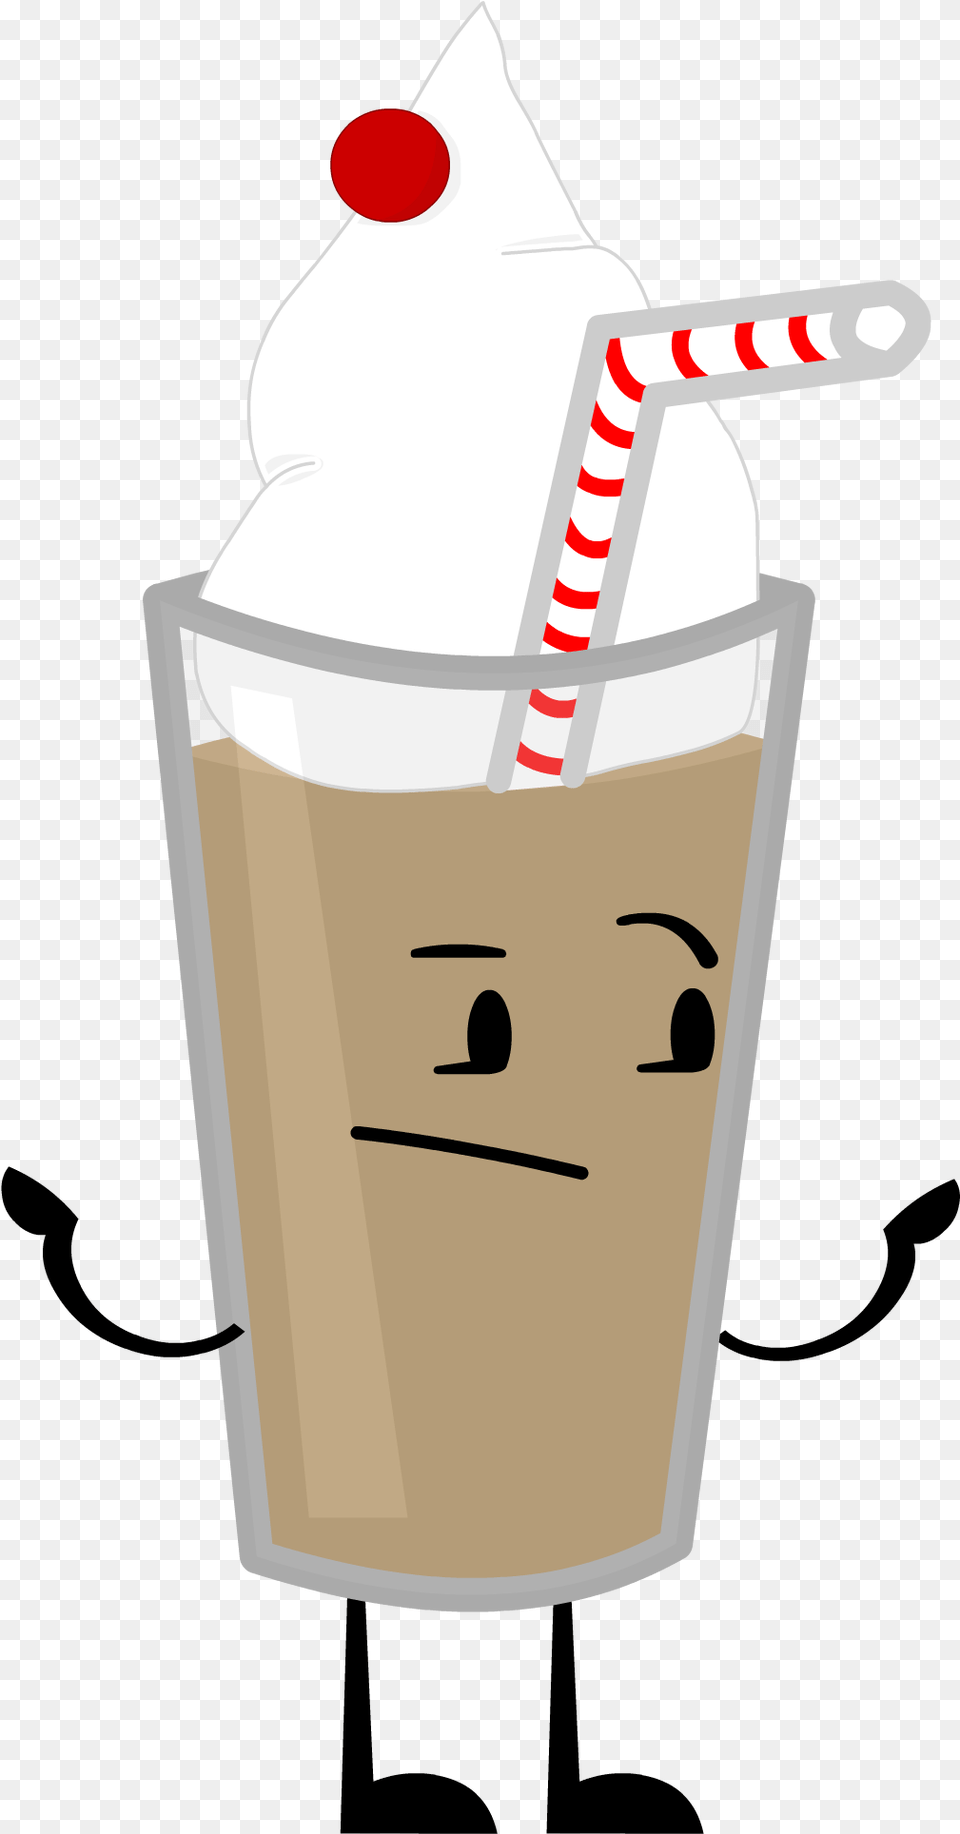 Milkshake Reboot Pose 0 Milkshake Cartoon, Beverage, Cream, Cup, Dessert Png